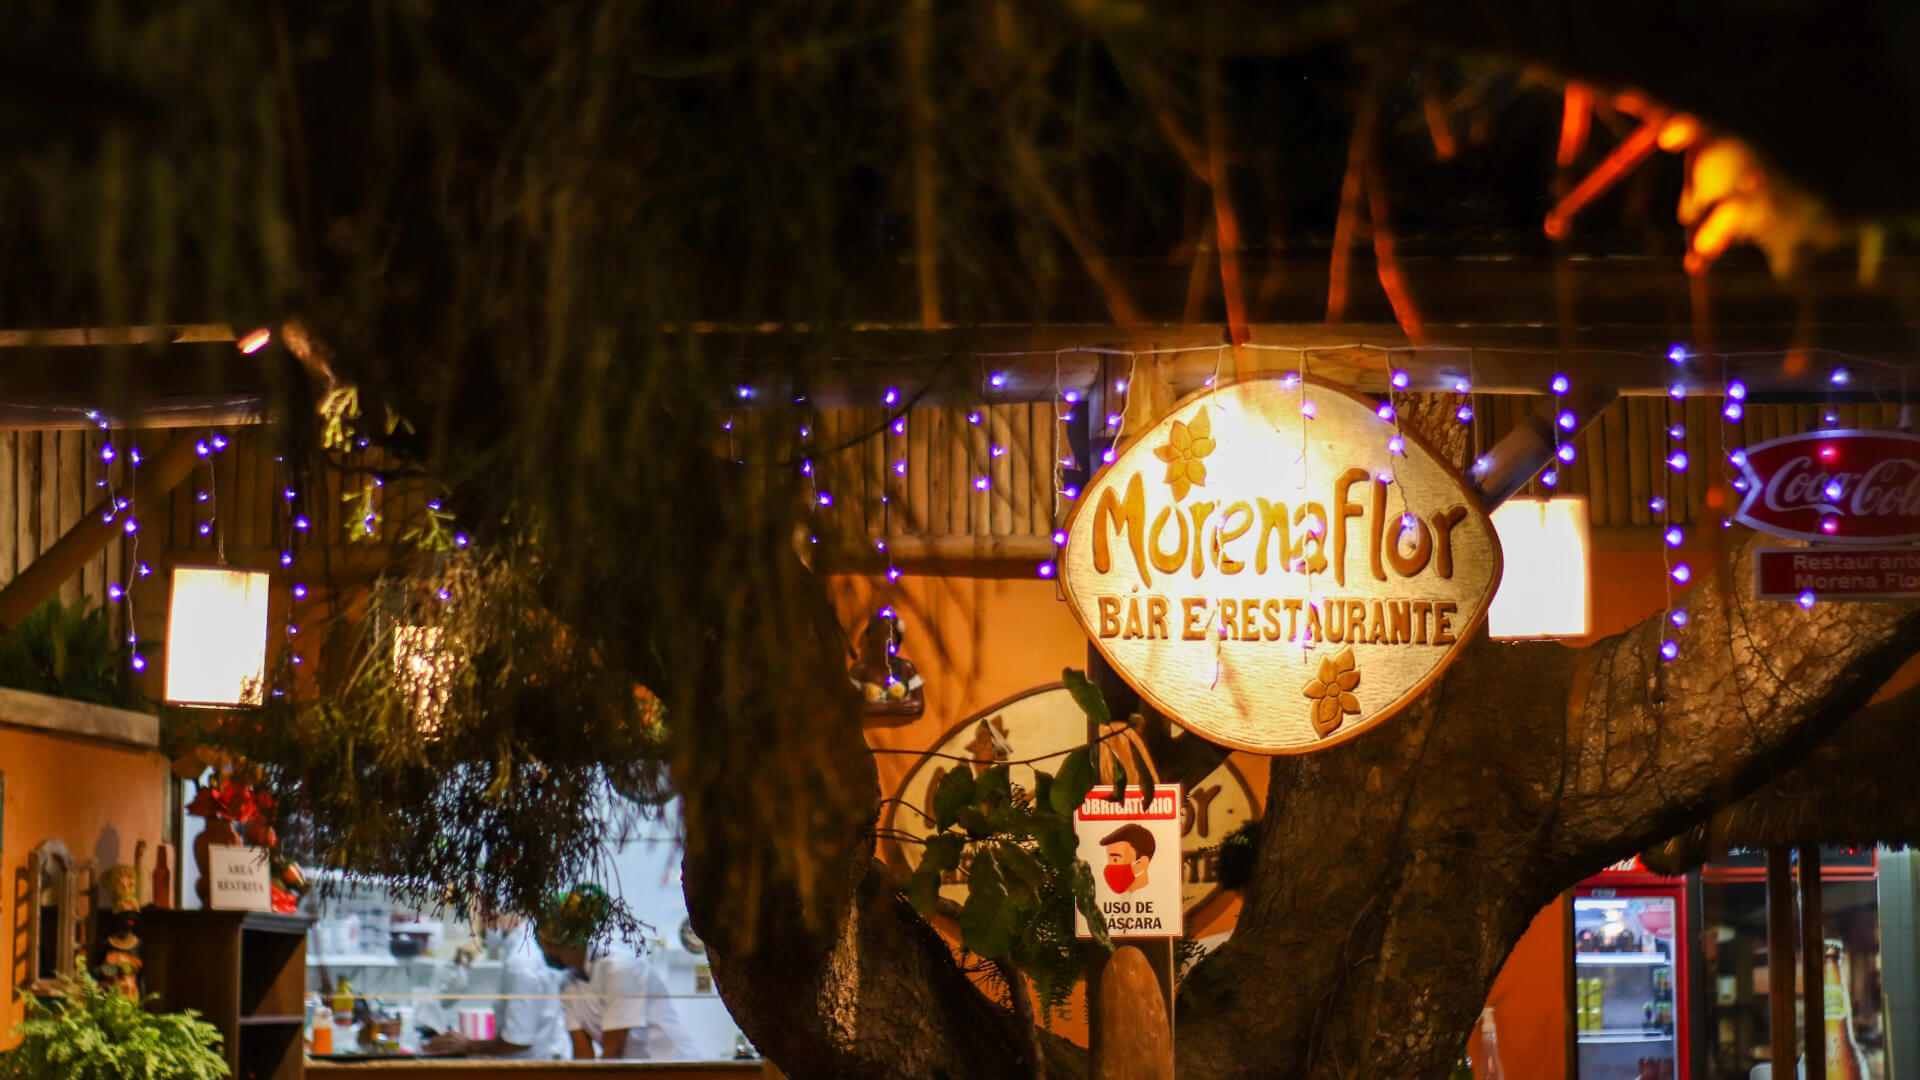 Morena Flor - restaurante em Arraial d'Ajuda | Visite Arraial d'Ajuda